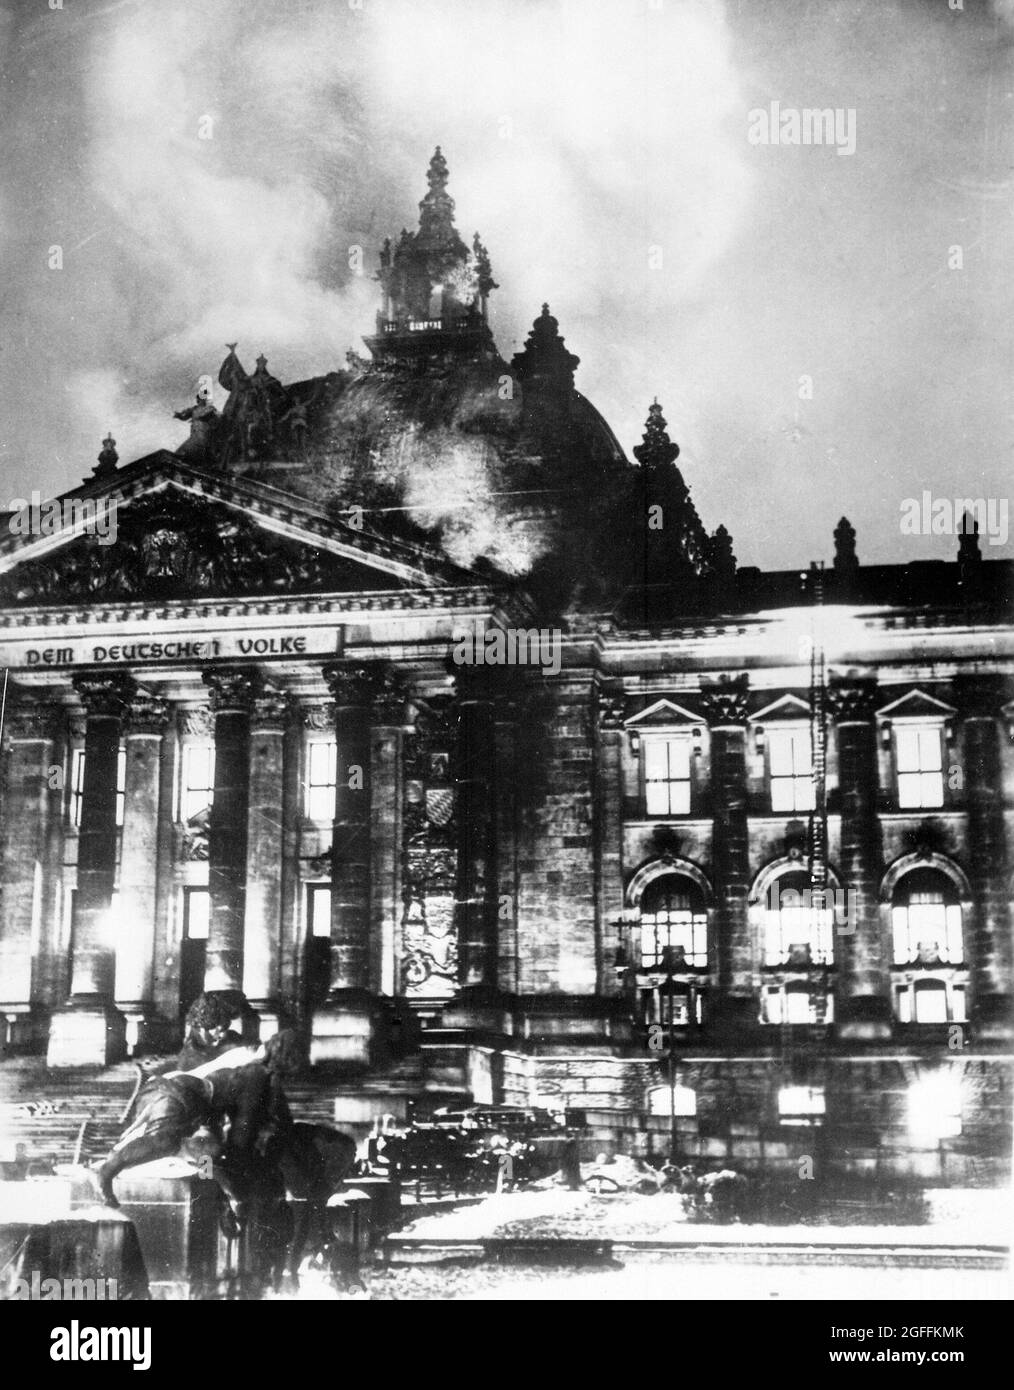 Der Reichstag brannte im Februar 1933. Dieses Feuer wurde benutzt, um Angst vor einem kommunistischen Aufstieg zu schaffen, was Hitler ermöglichte, ein Gesetz zu verabschieden, das es ihm erlaubte, durch Dekret zu regieren. Stockfoto